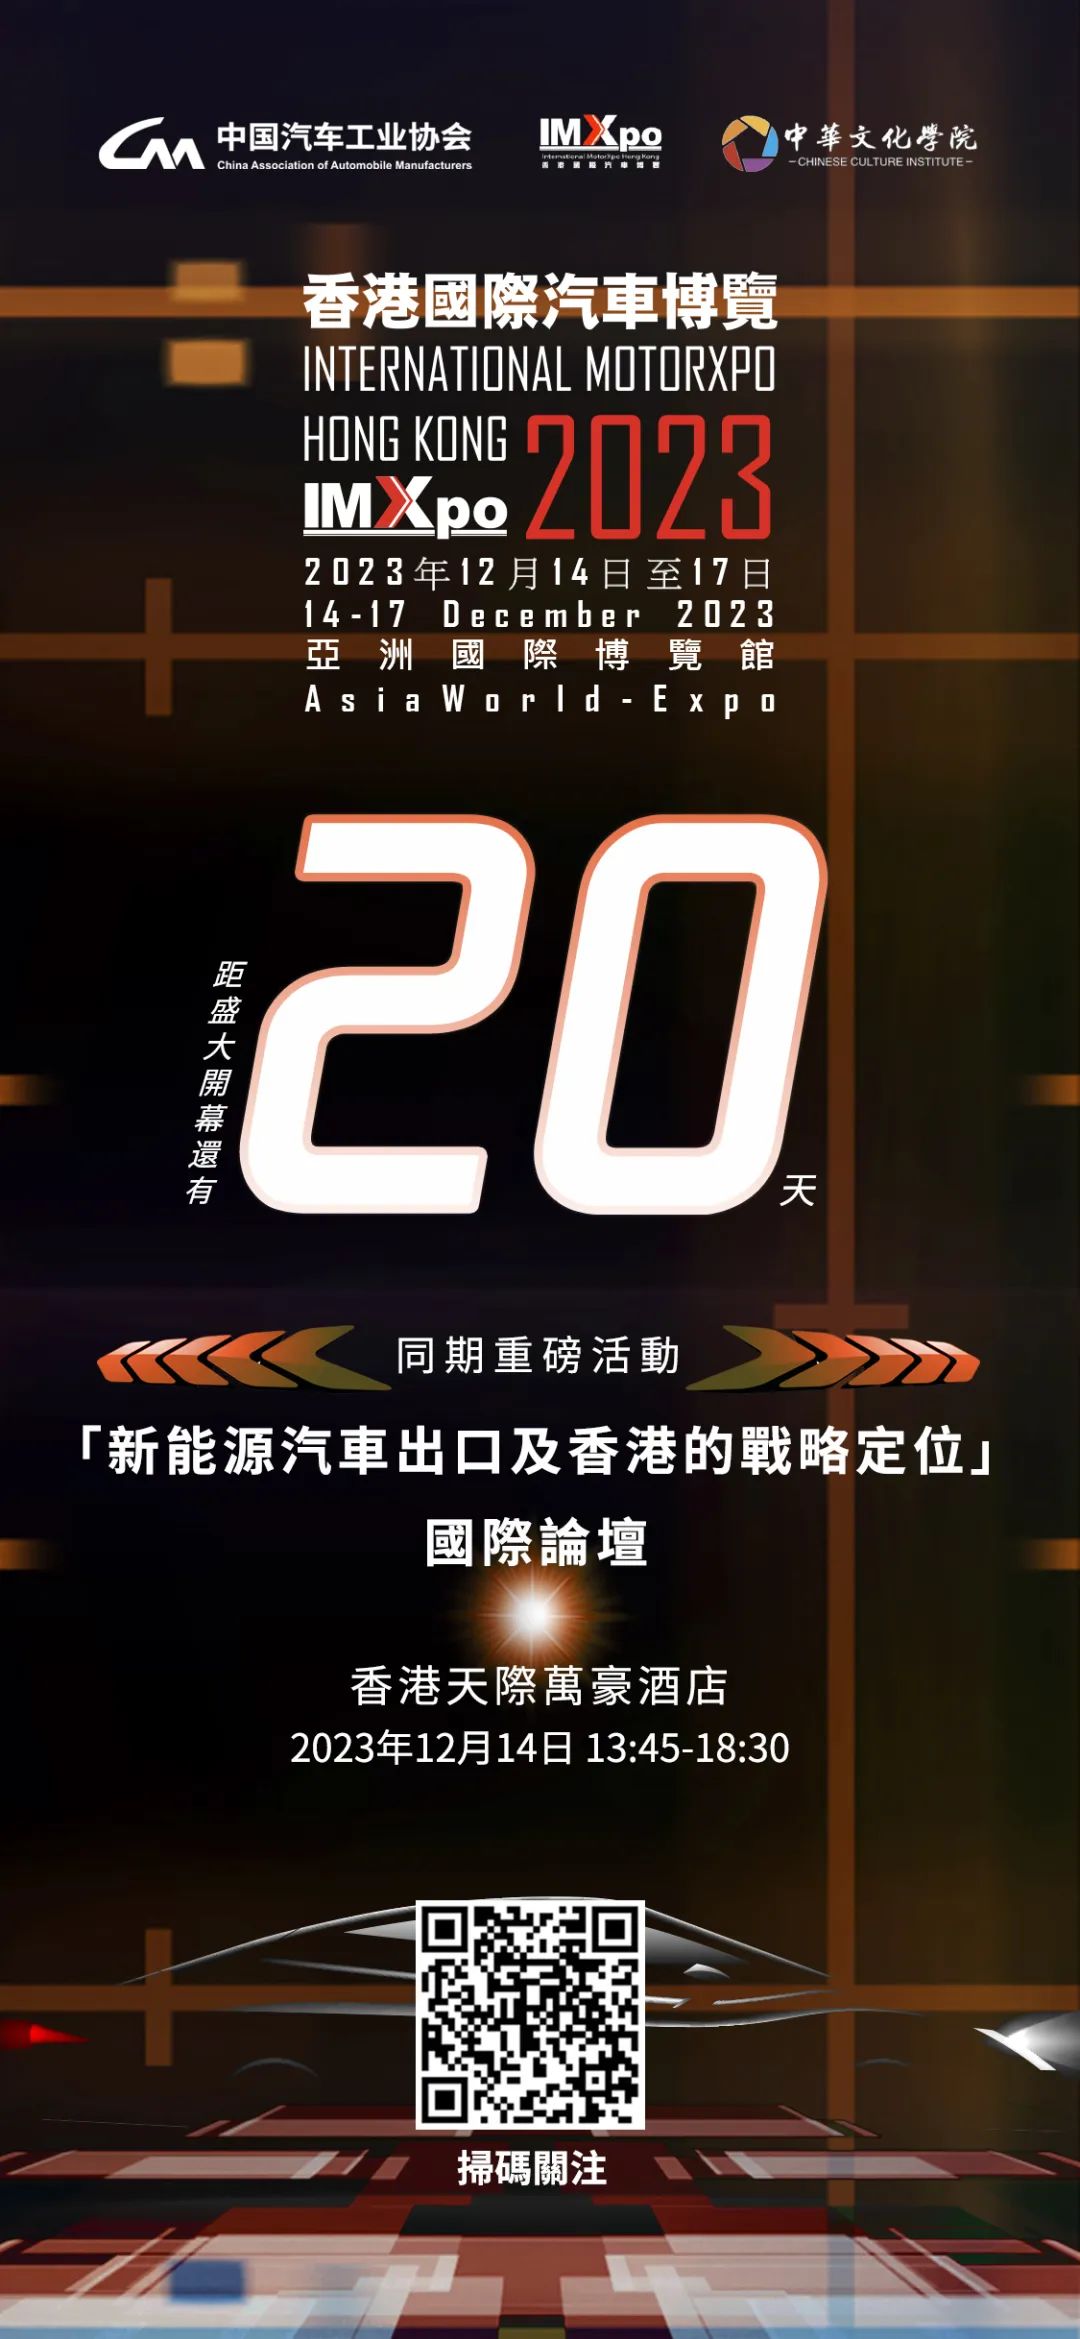 还有20天！香港国际汽车博览（IMXpo）2023开幕，这里有一场国际论坛等待着你！